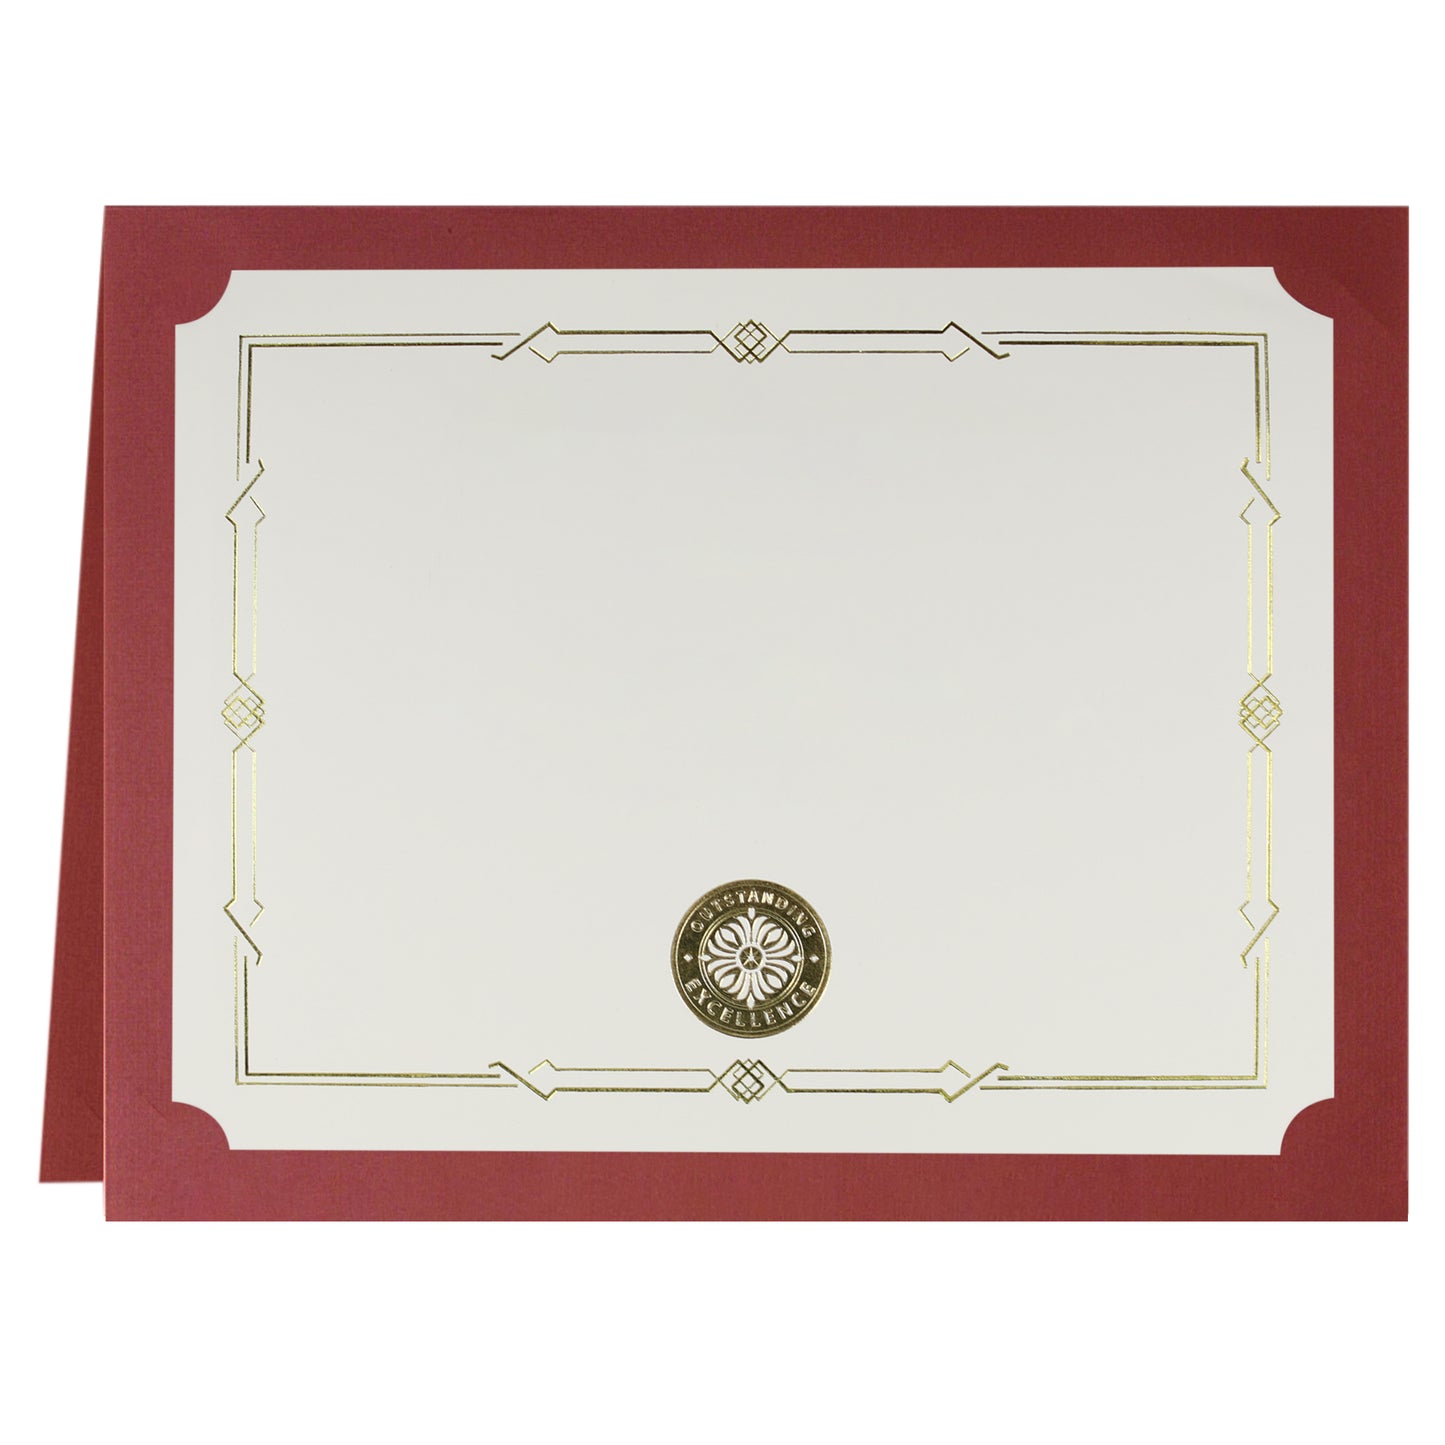 St. James® Porte-certificats/Couvertures de documents/Porte-diplômes, Rouge, Feuille d'or, Finition lin, Paquet de 5, 83812